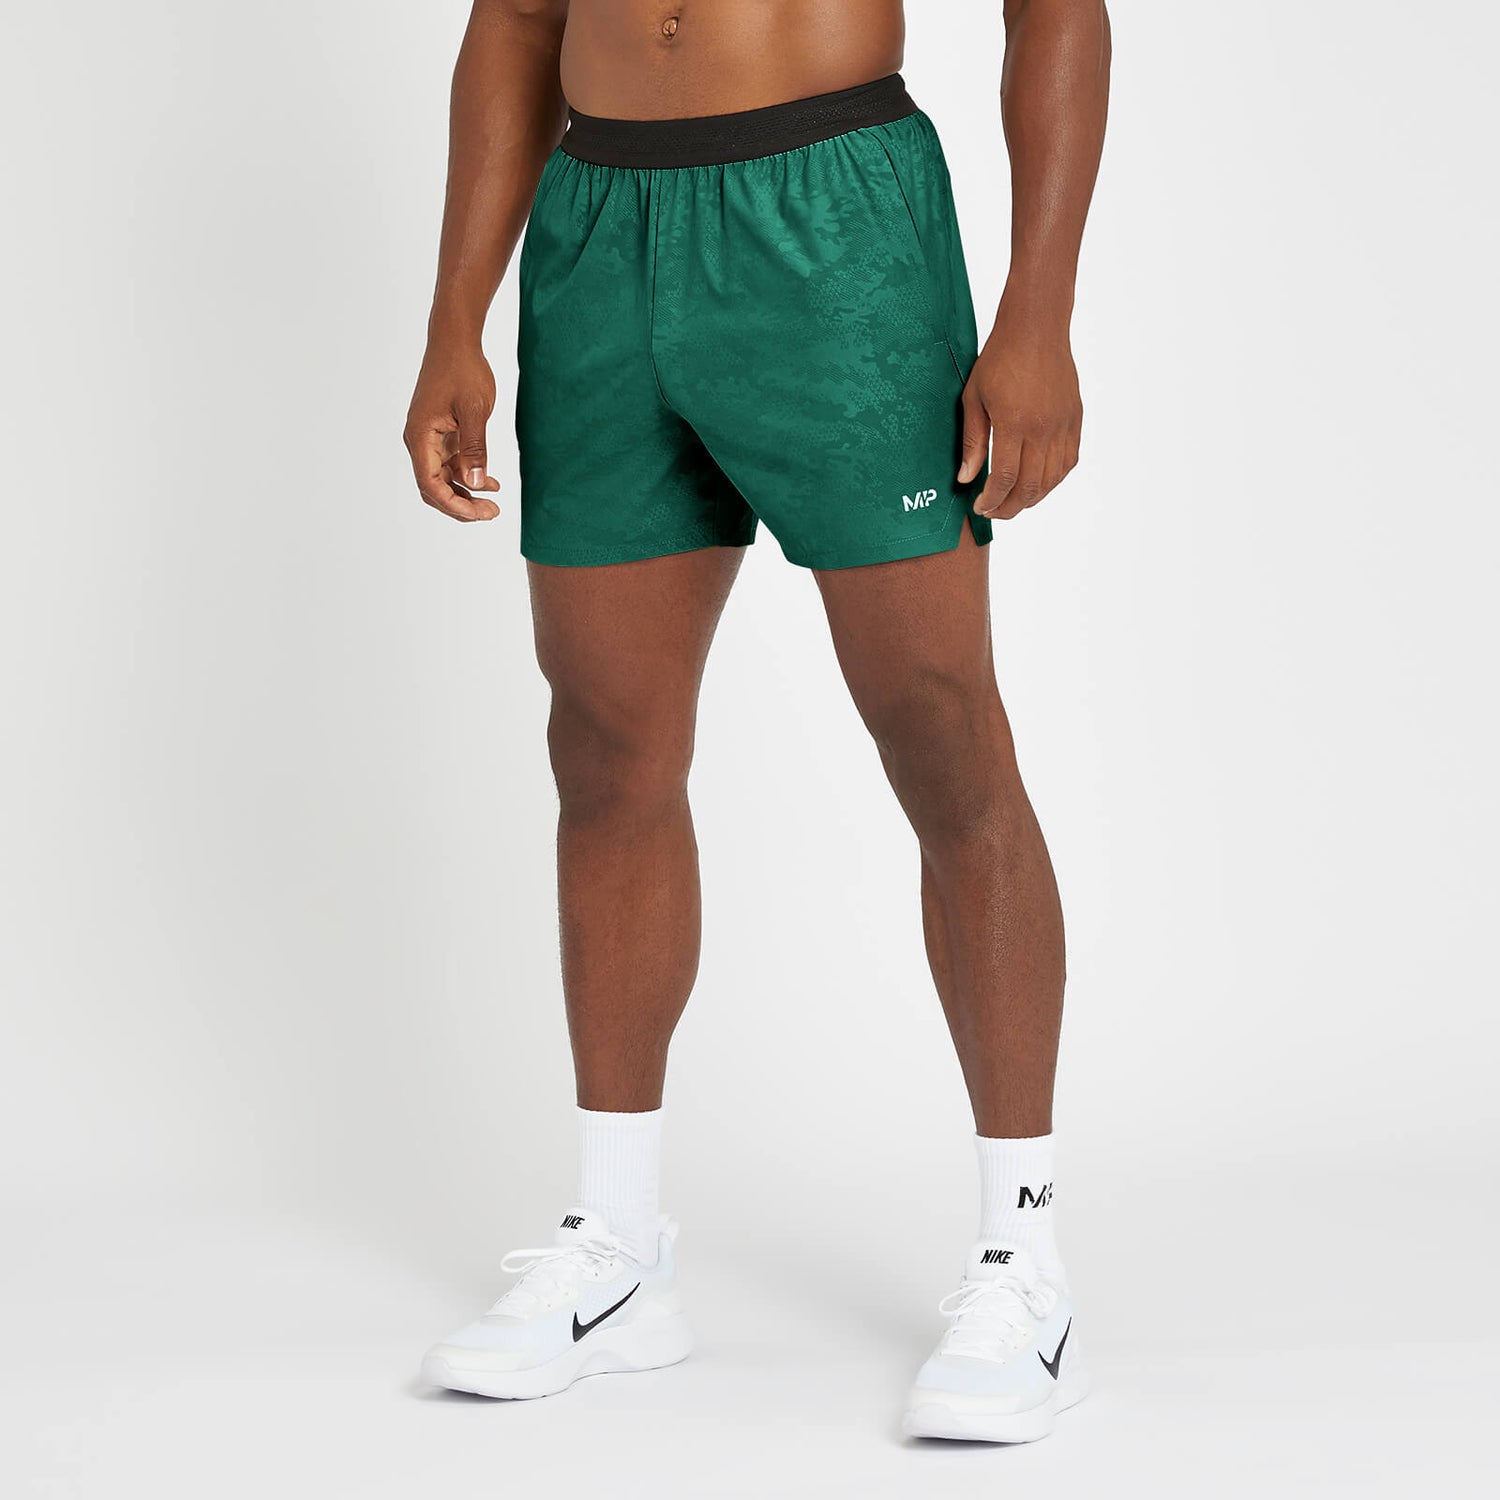 Pantalón corto Engage de edición limitada para hombre de MP - Verde pino - XL